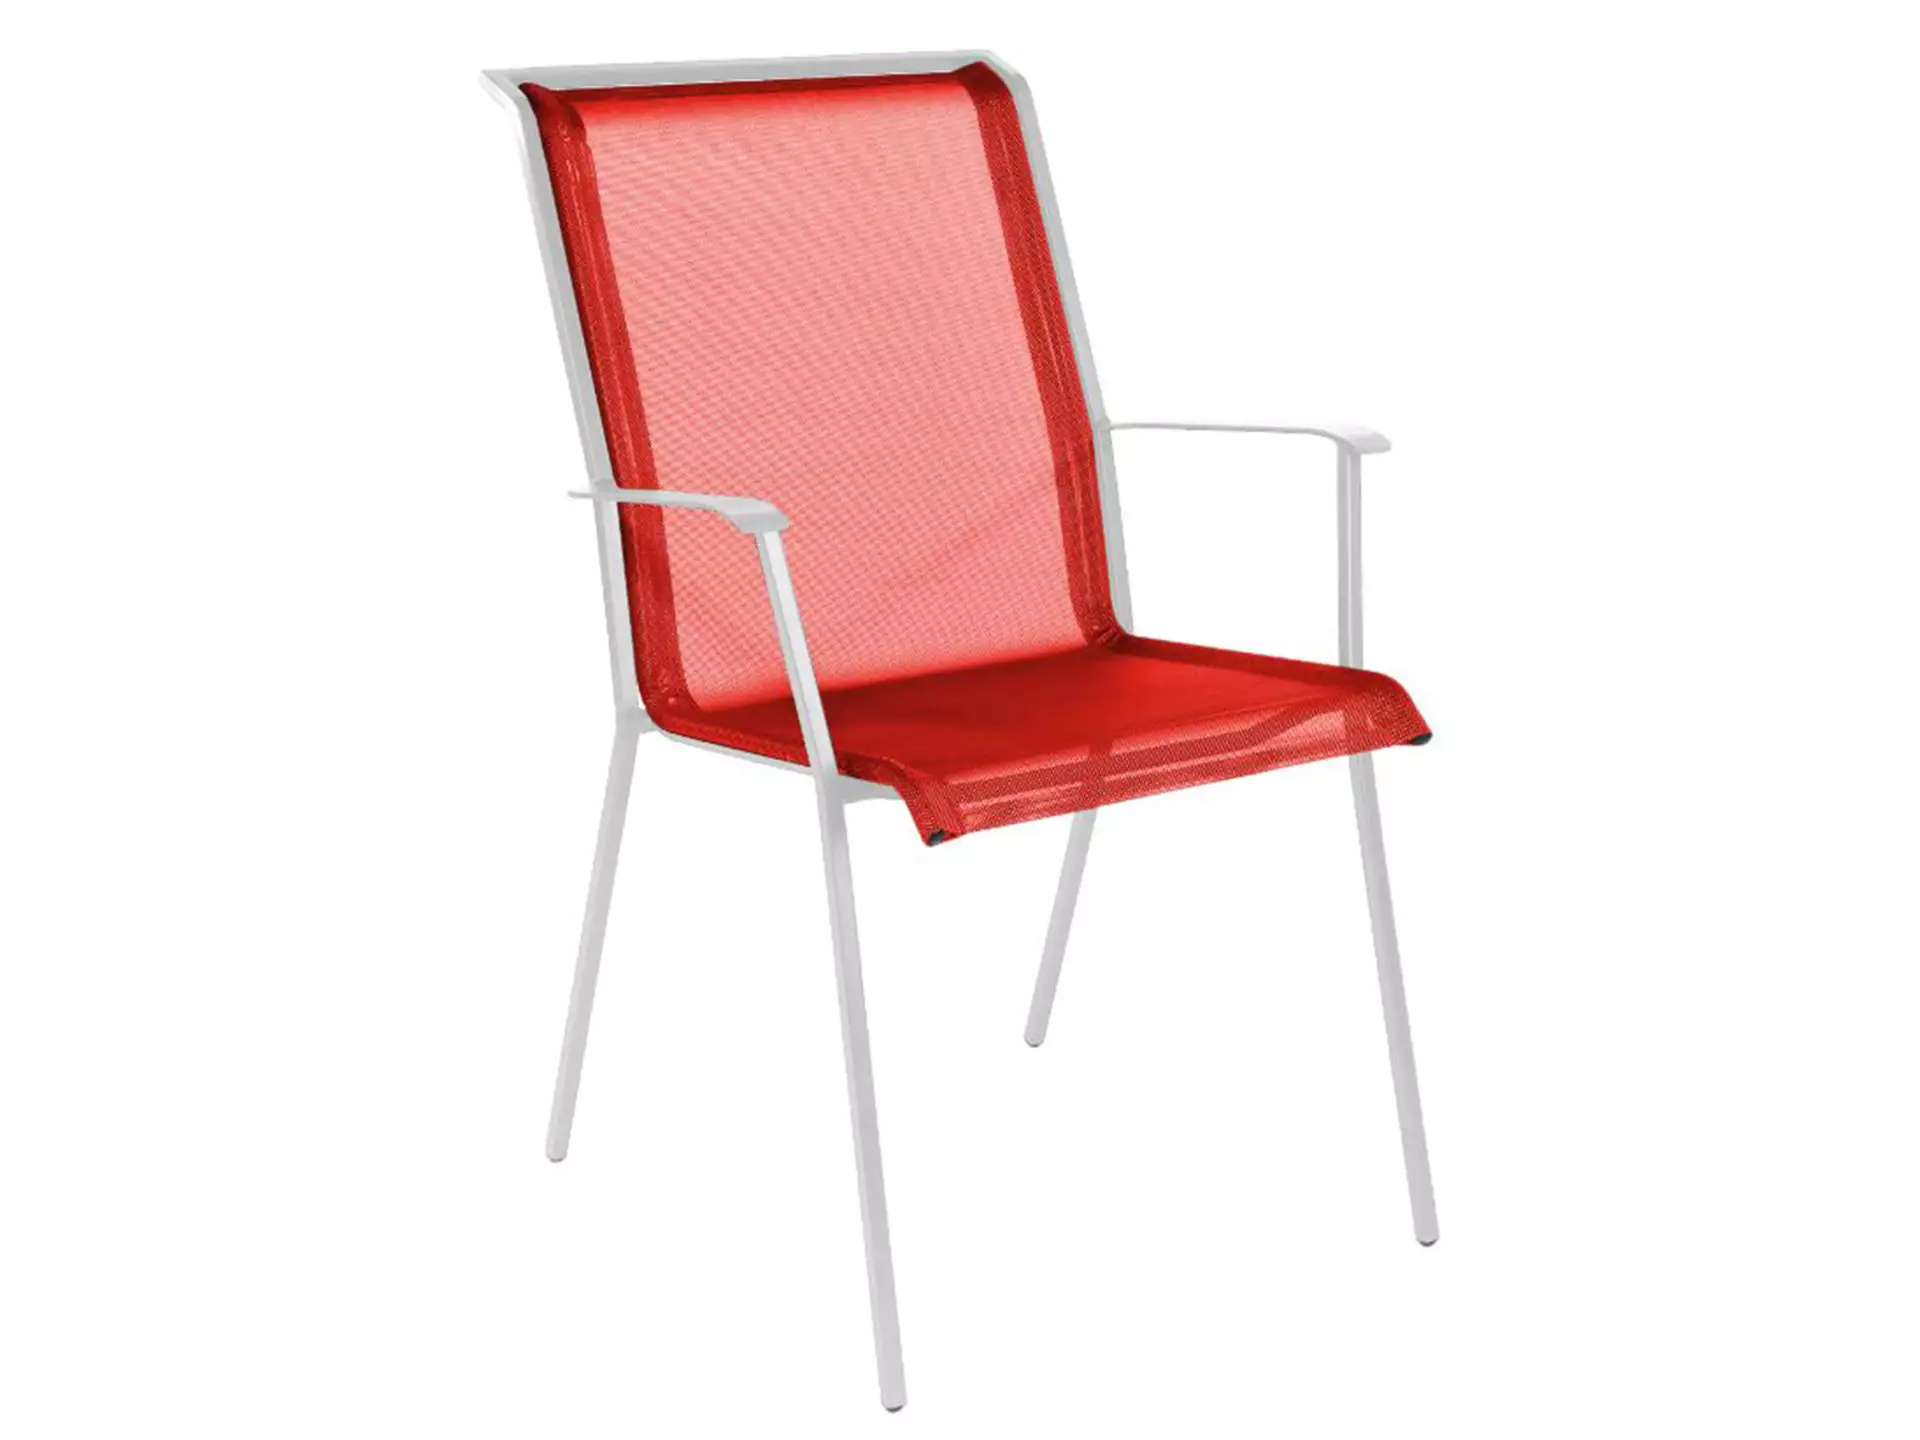 Matten-Sessel Chur Schaffner / Farbe: Rot